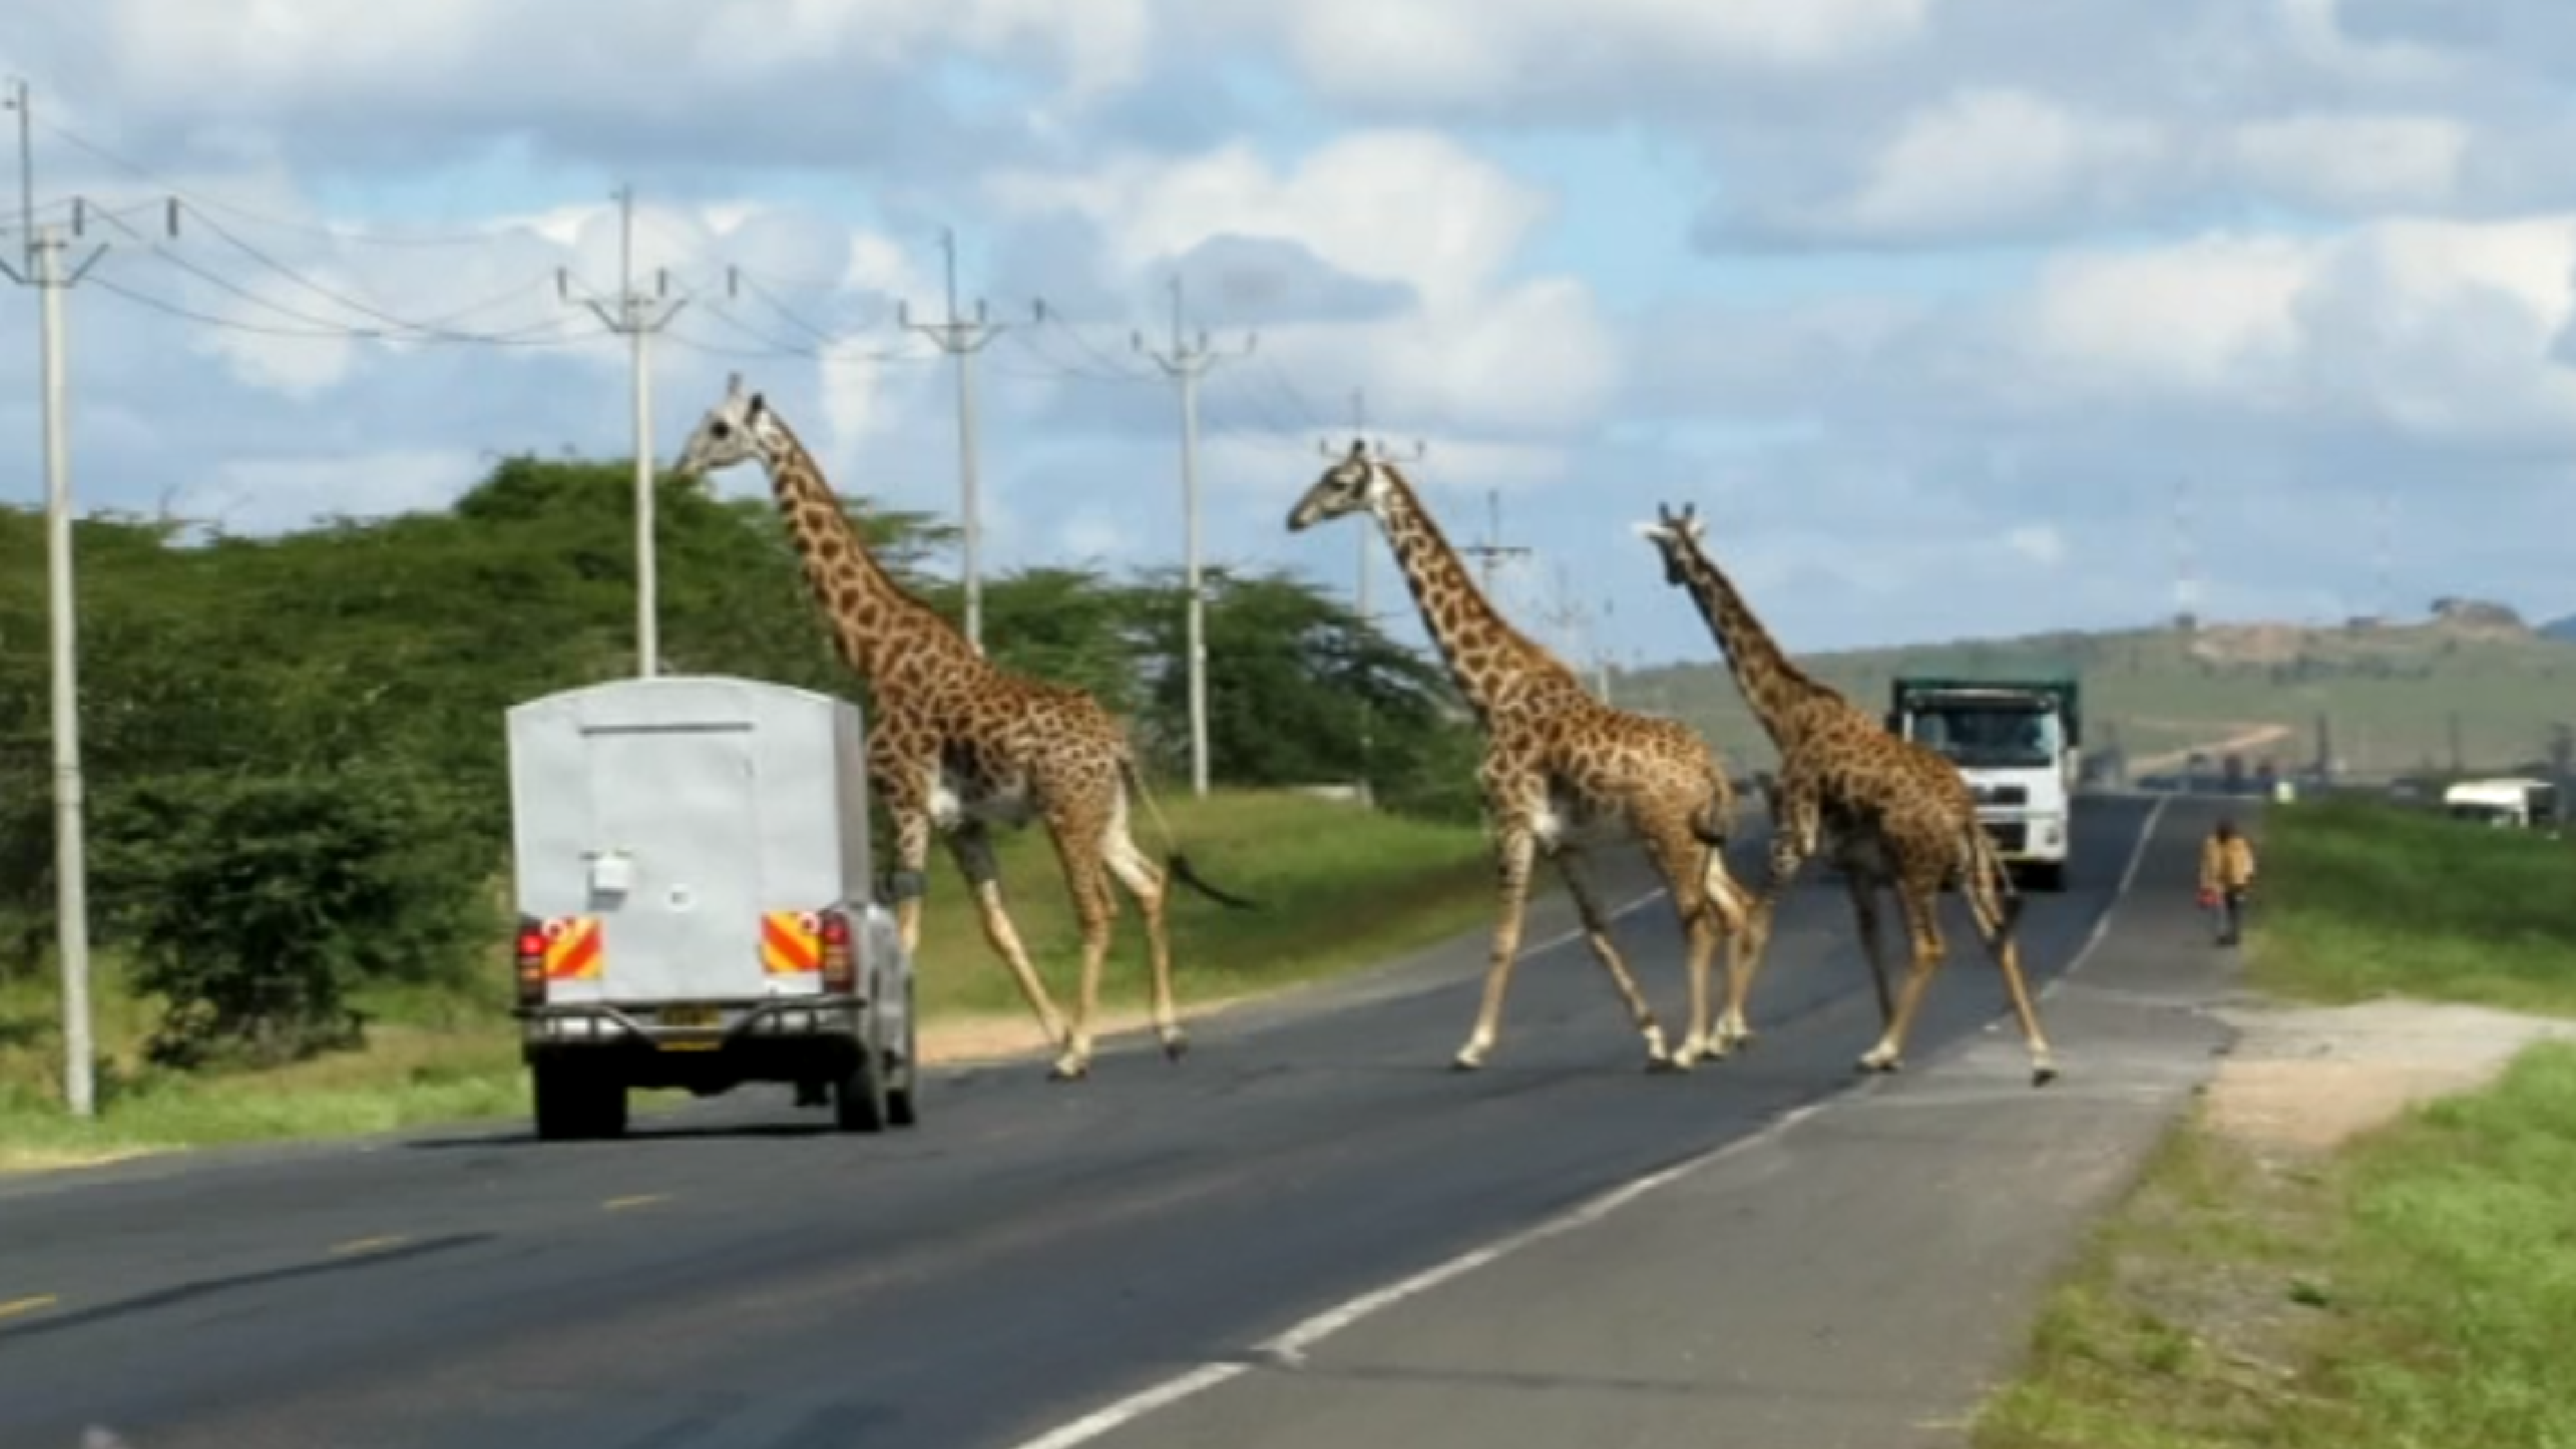 Giraffe crossing (Save Giraffes Now / Chemwa)